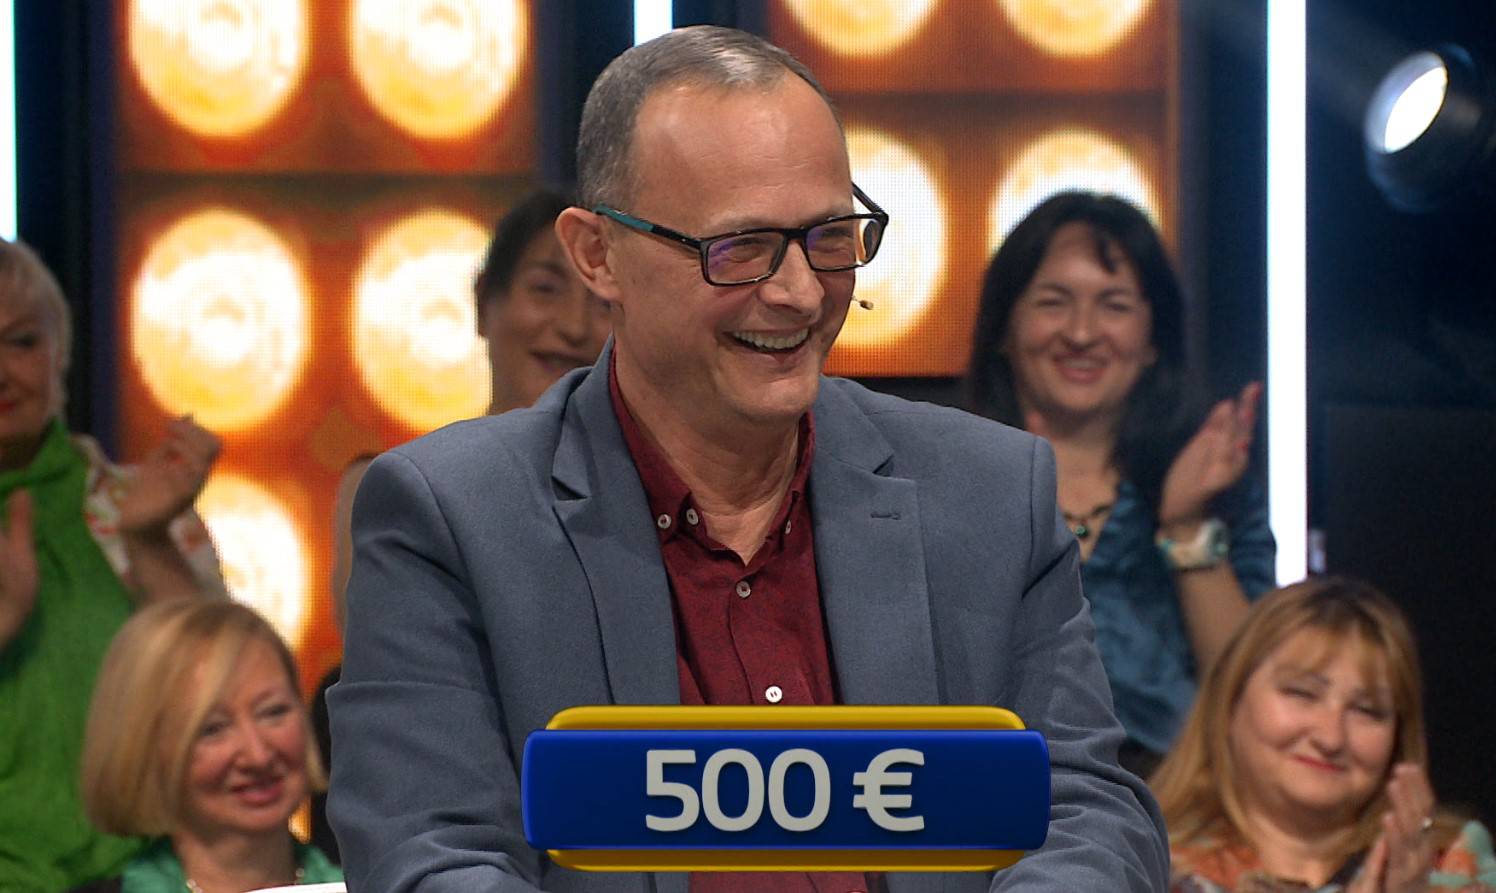 Mirko osvojio 500 € u Jokeru: Pomoglo mu znanje o cestama